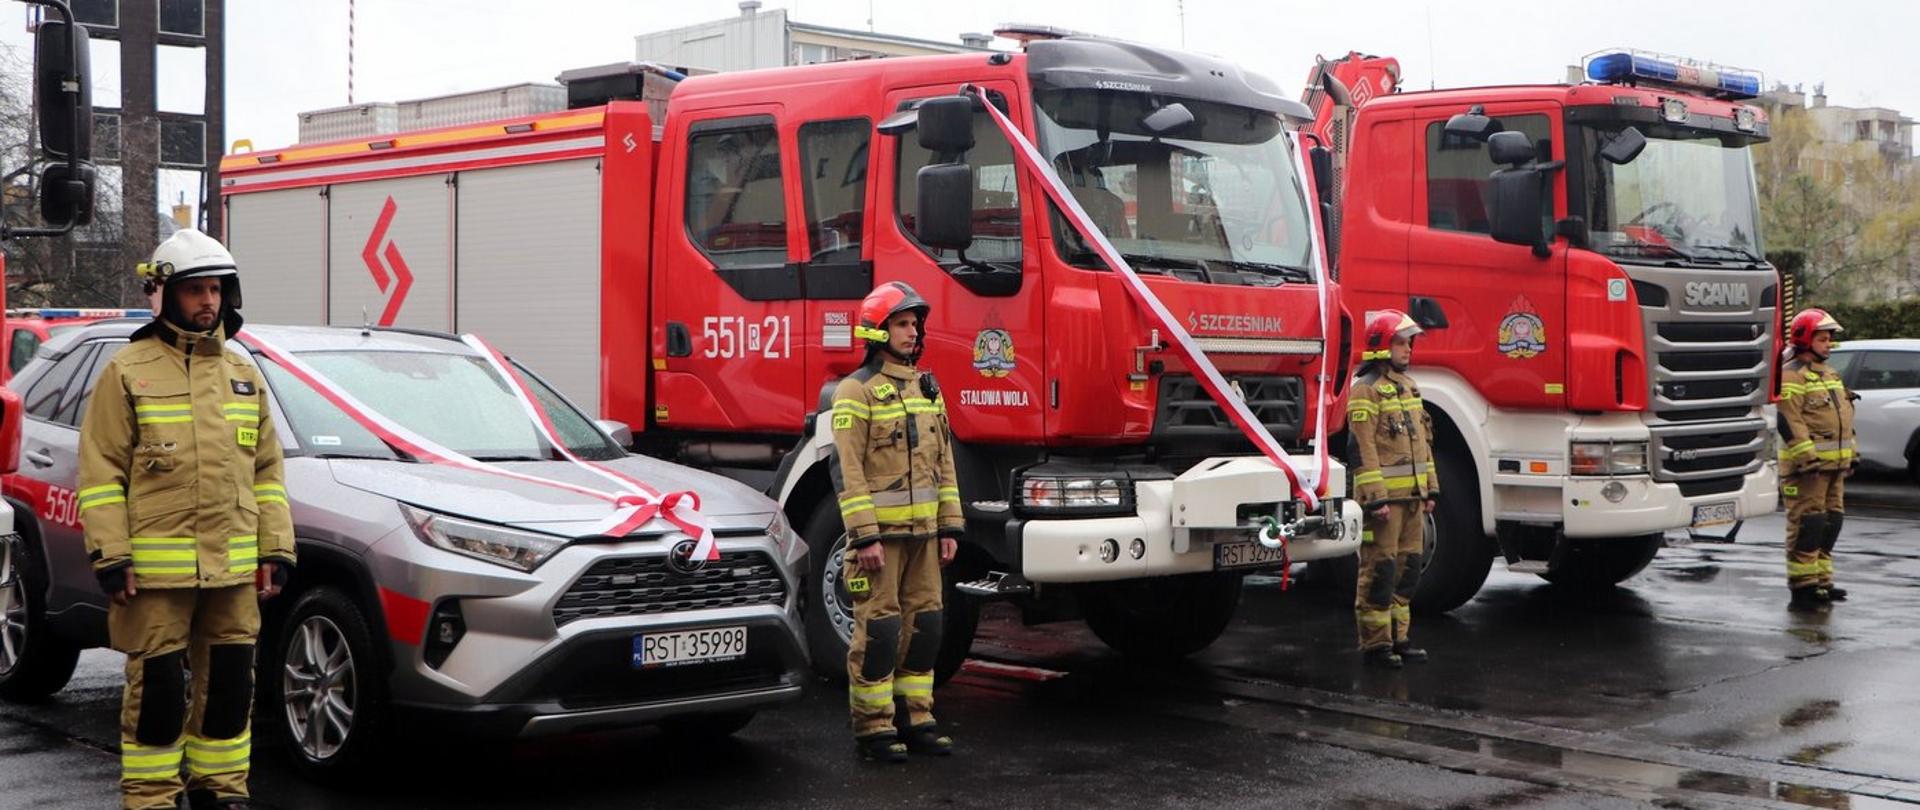 Nowe pojazdy pożarnicze przekazane komendzie powiatowej PSP w Stalowej Woli